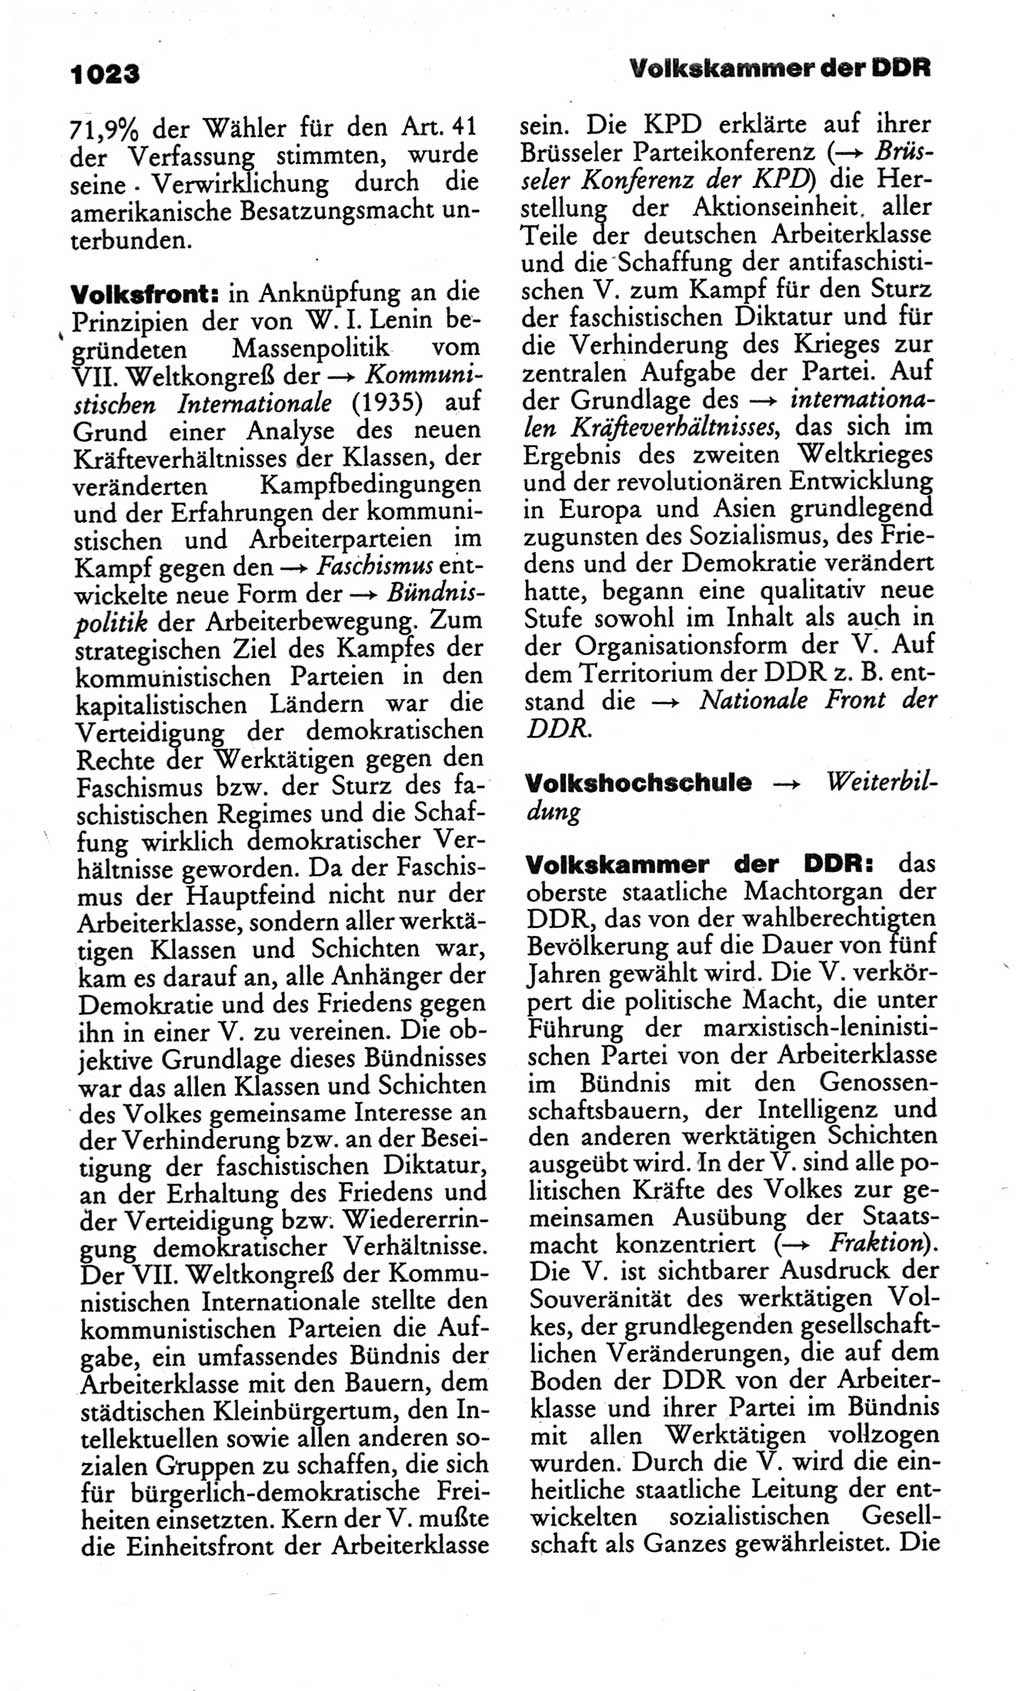 Kleines politisches Wörterbuch [Deutsche Demokratische Republik (DDR)] 1986, Seite 1023 (Kl. pol. Wb. DDR 1986, S. 1023)